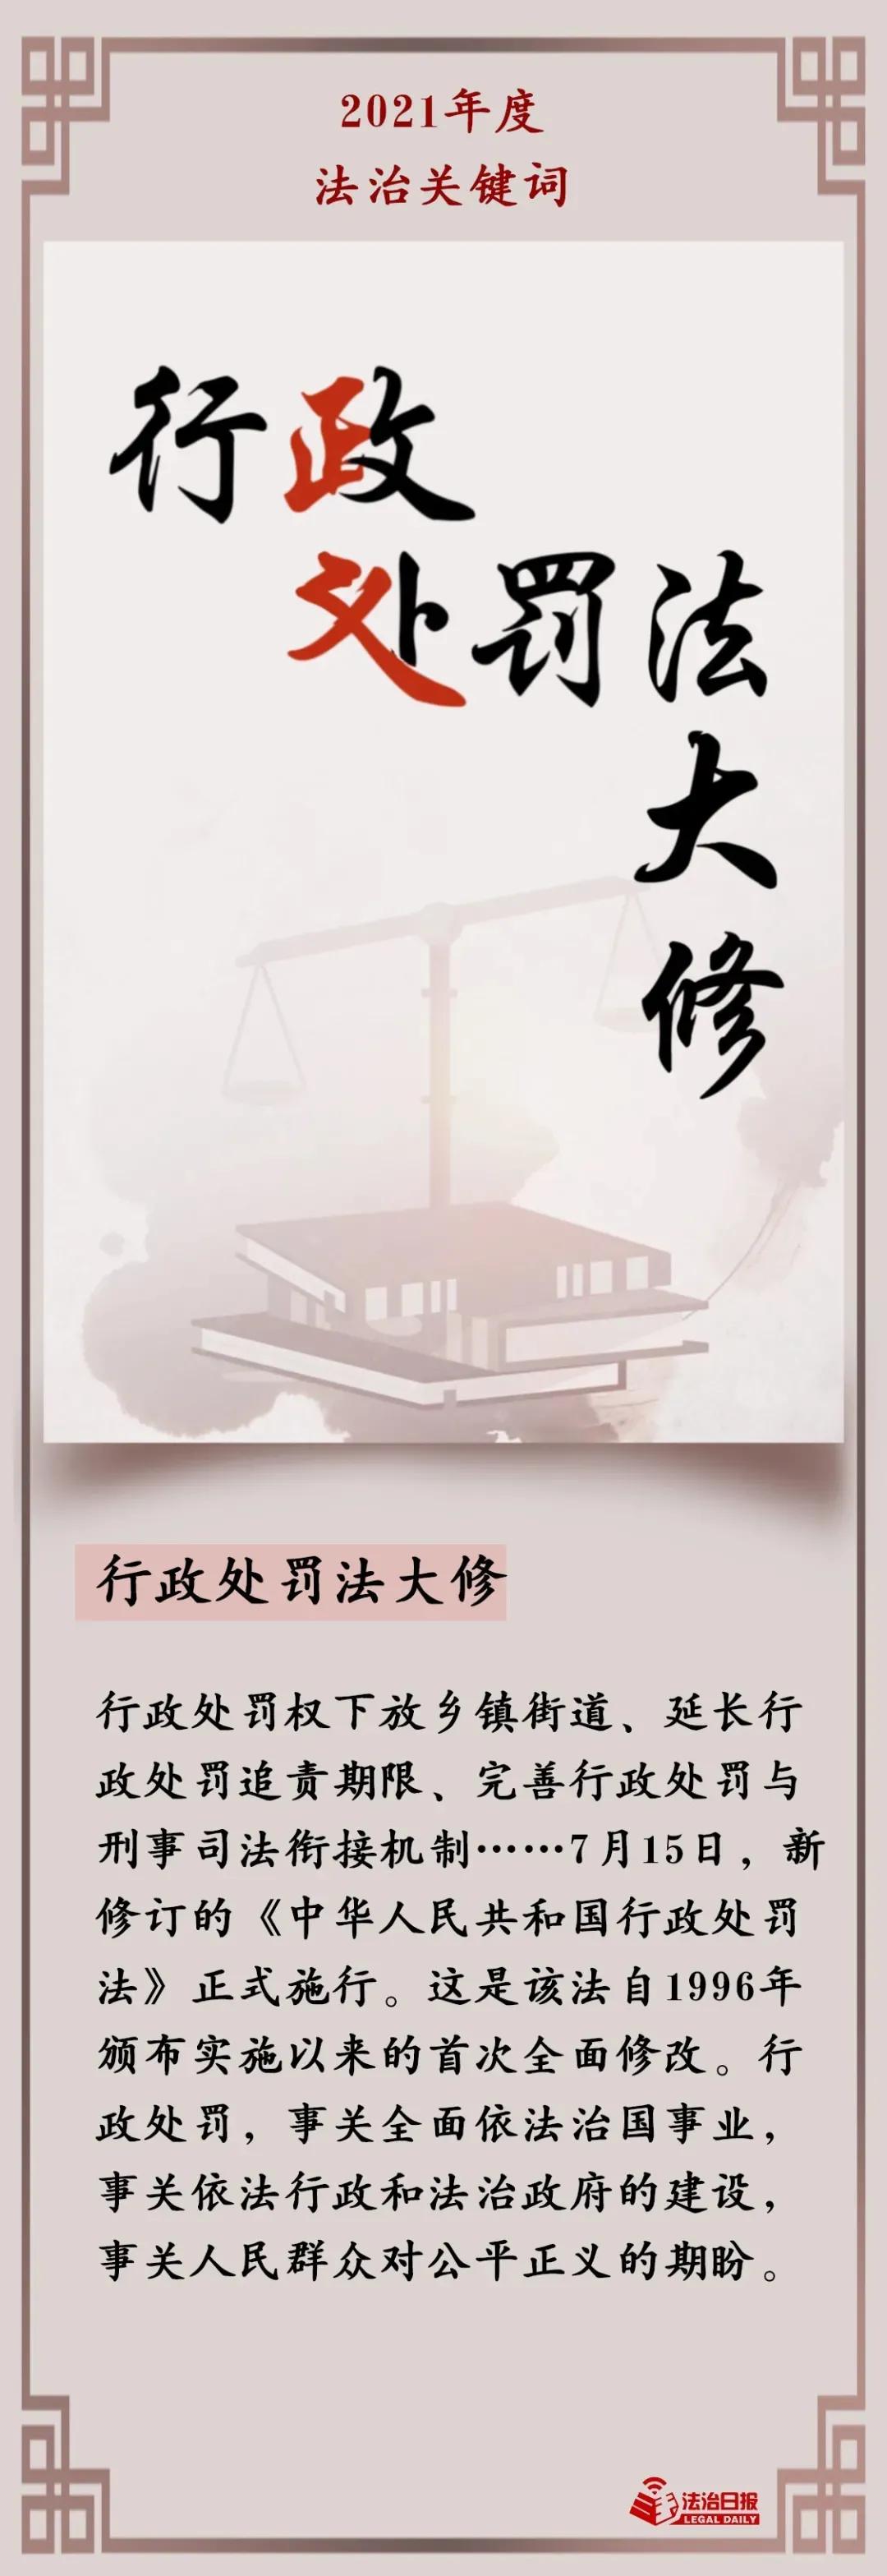 21个关键词，回顾法治中国2021